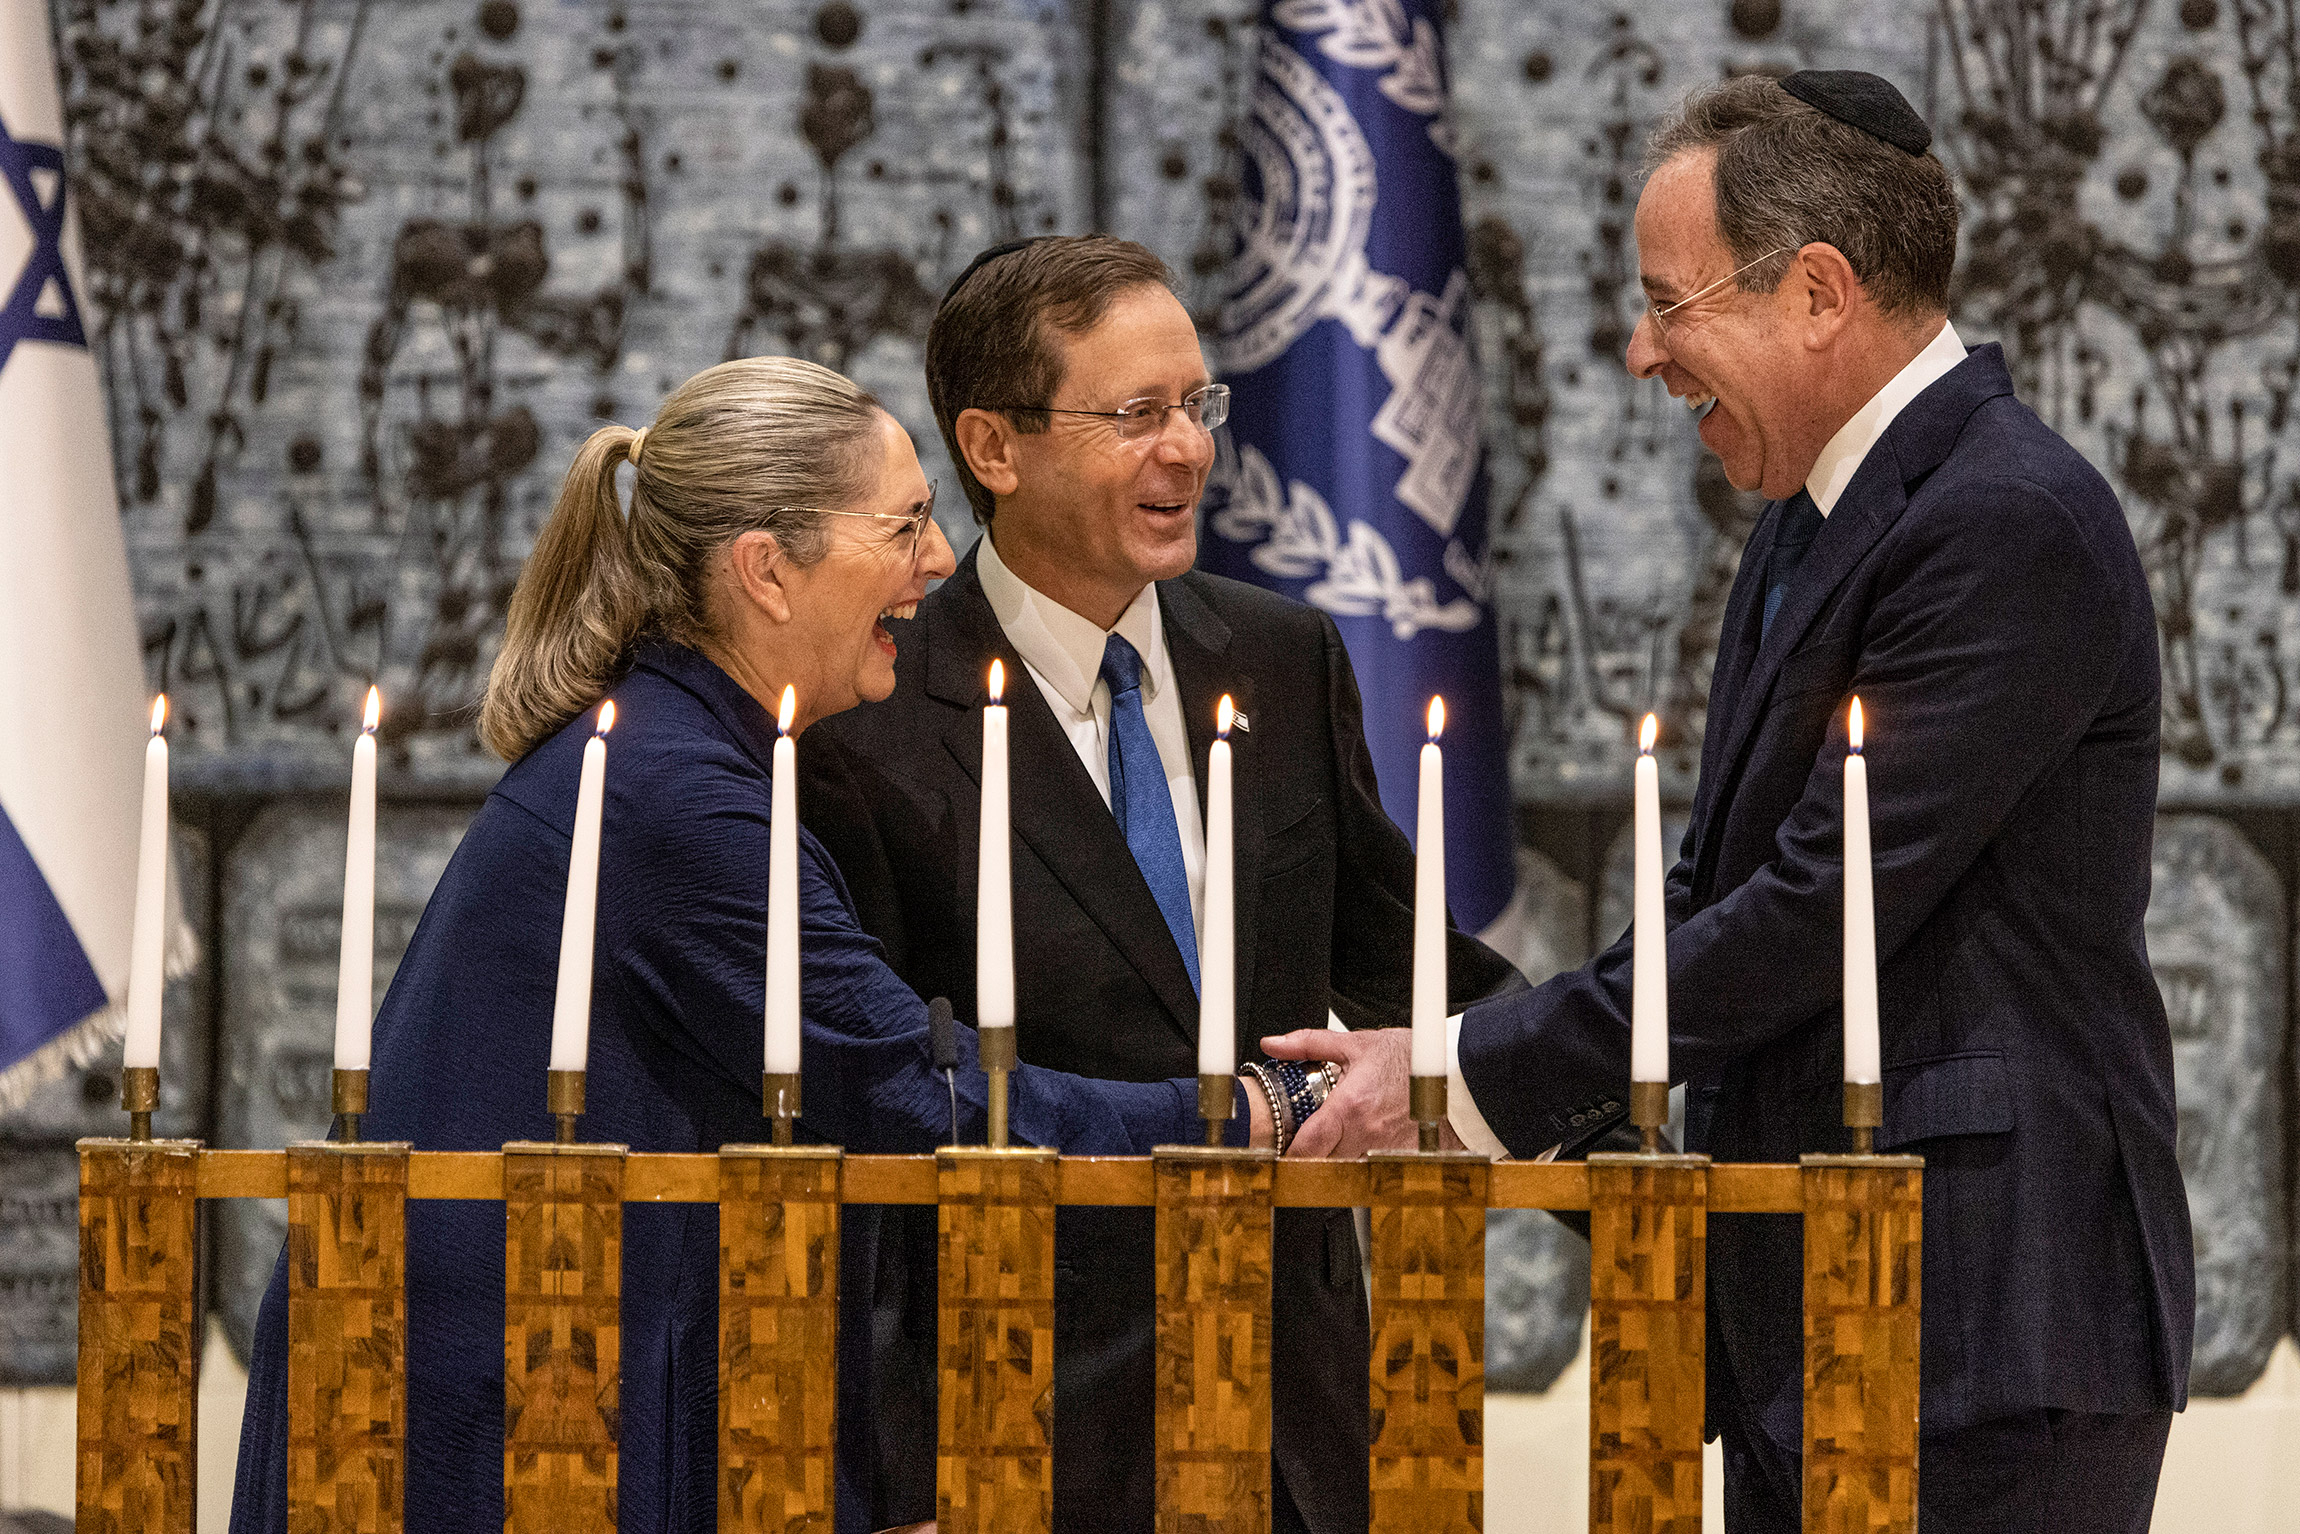 Президент Израиля Ицхак Херцог, его жена Михаль Херцог и посол США в Израиле Томас Найдс на церемонии зажжения свечей на Хануку.&nbsp;5 декабря, президентская резиденция в Иерусалиме